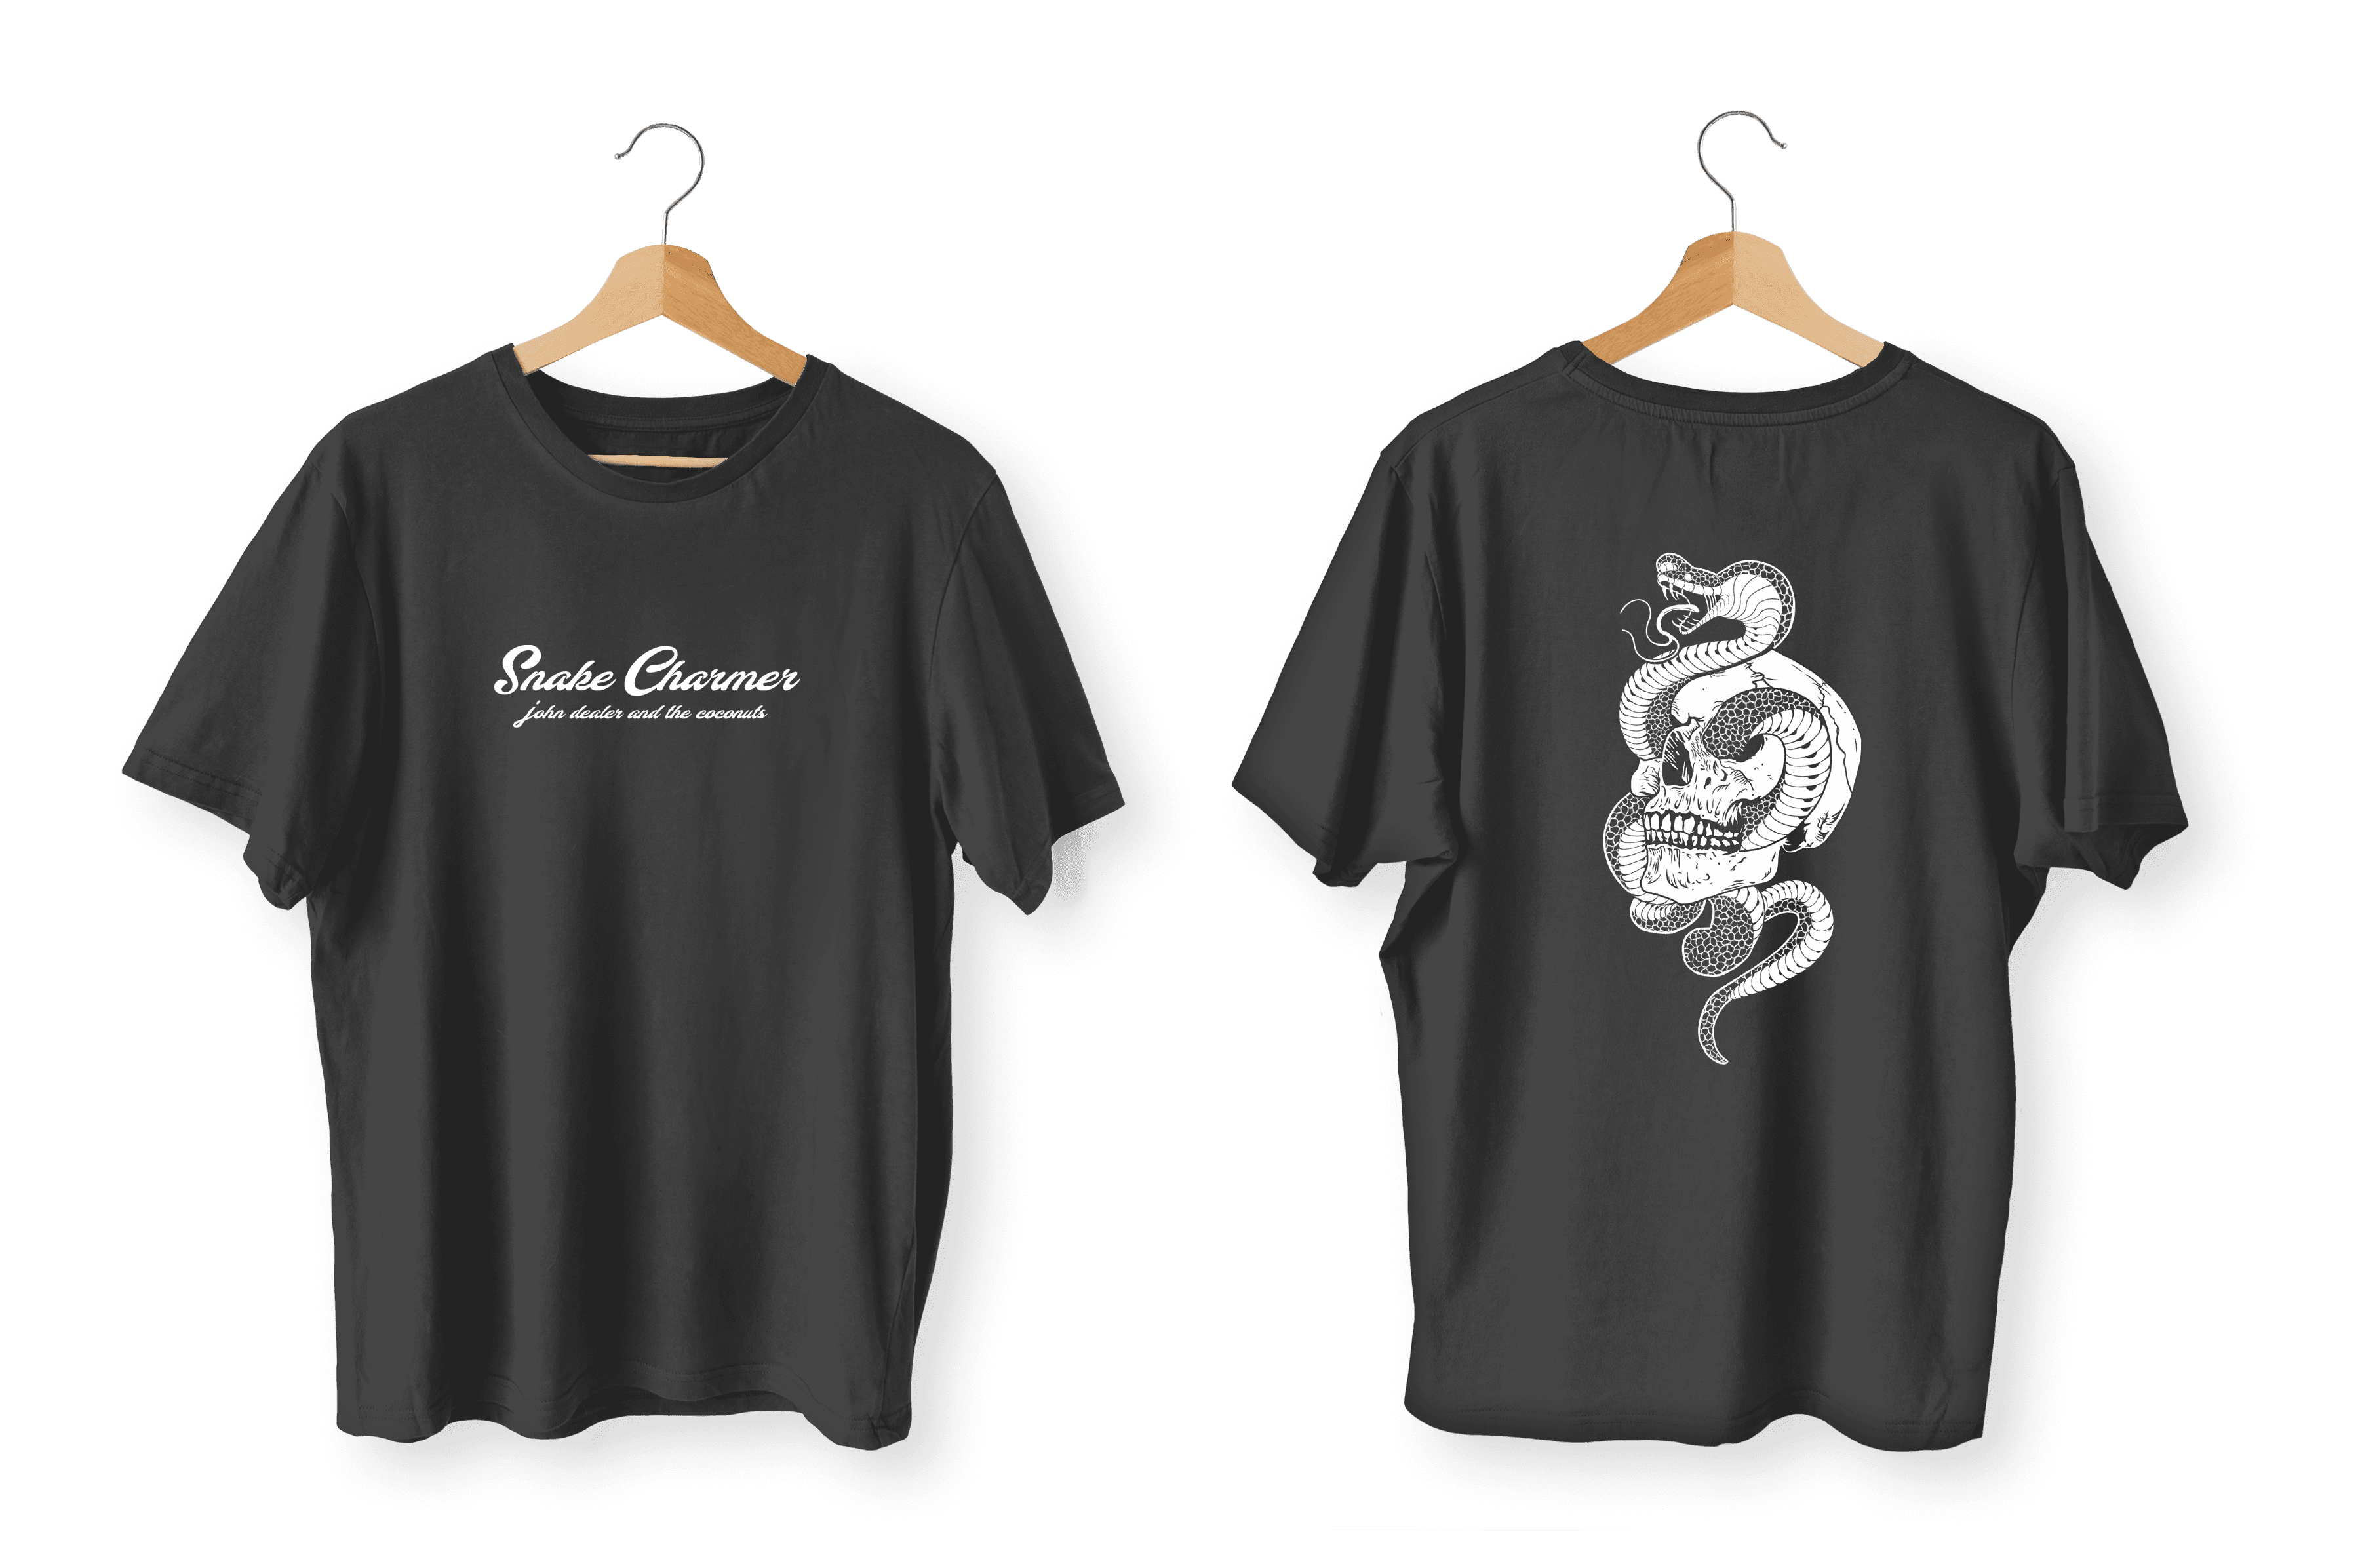 Chronicles of brass una camiseta que captura la esencia de steampunk